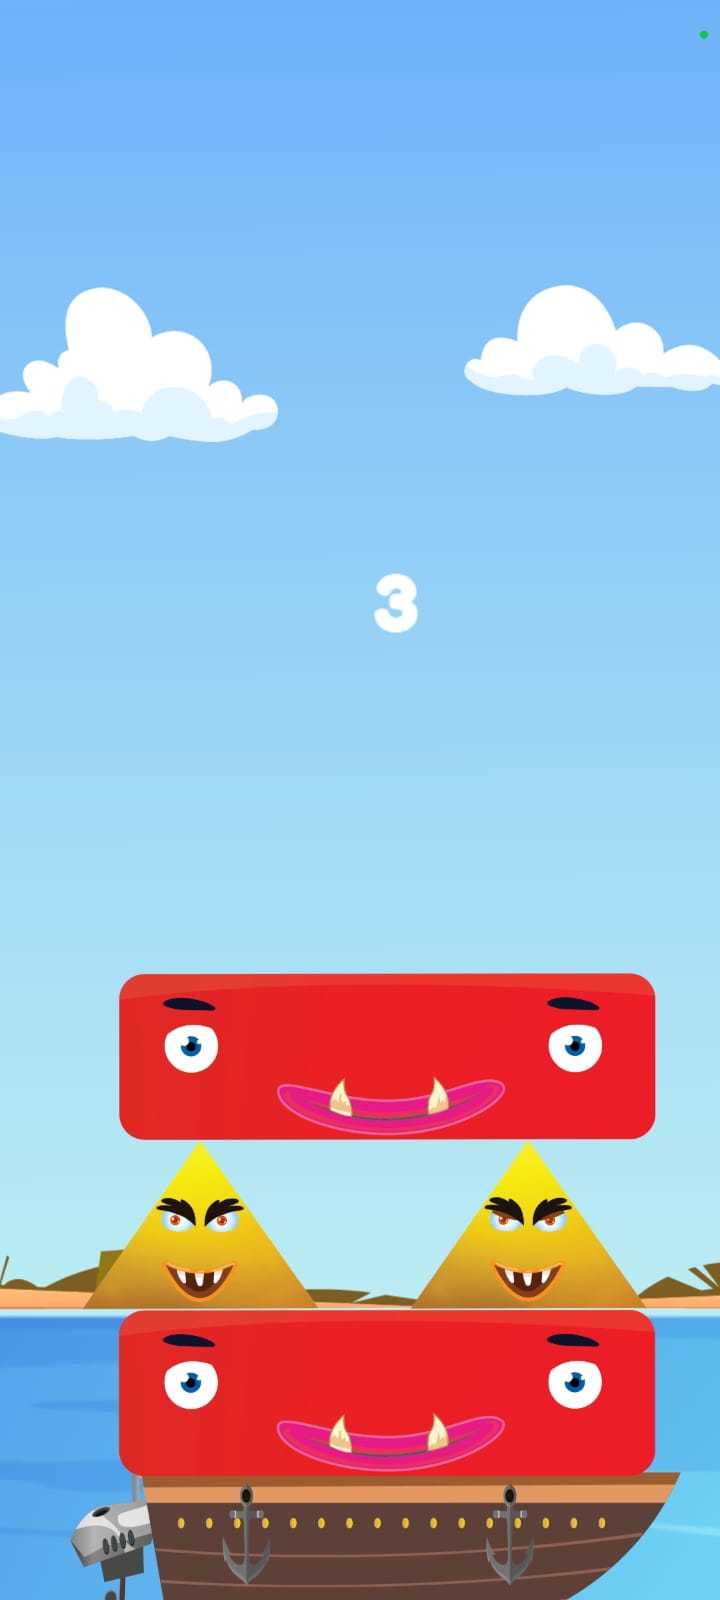 Screenshot 1 of Желейные блоки: игра-головоломка 1.0